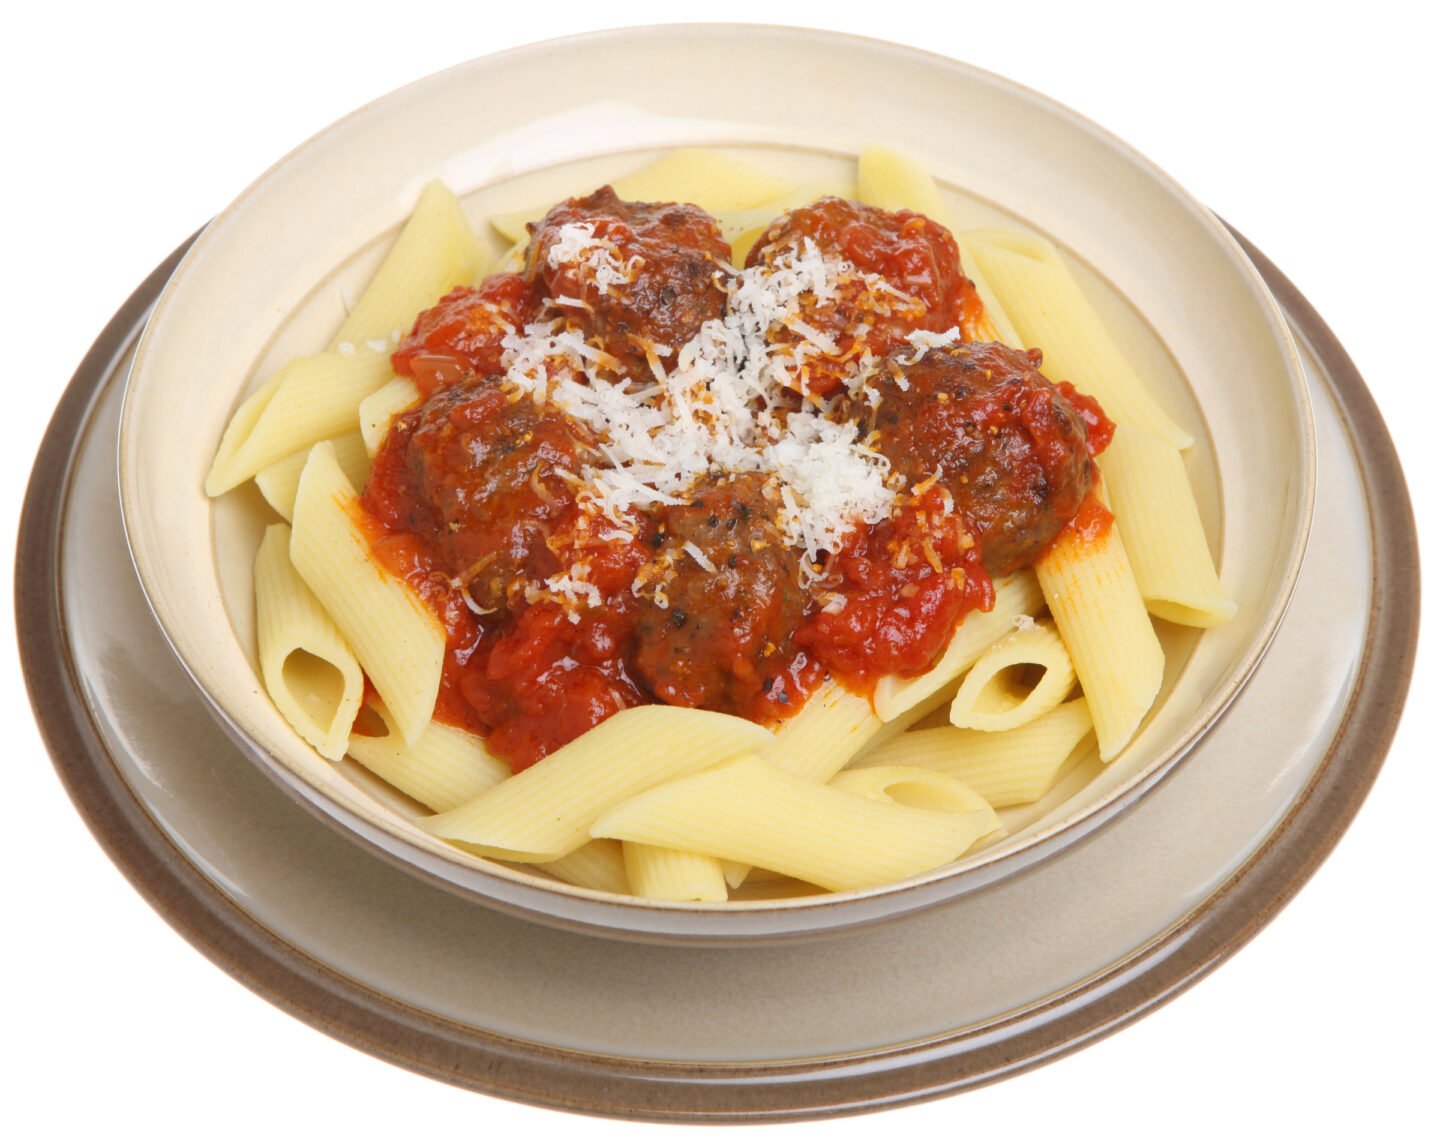 rigatoni pasta with meatballs in tomato sauce